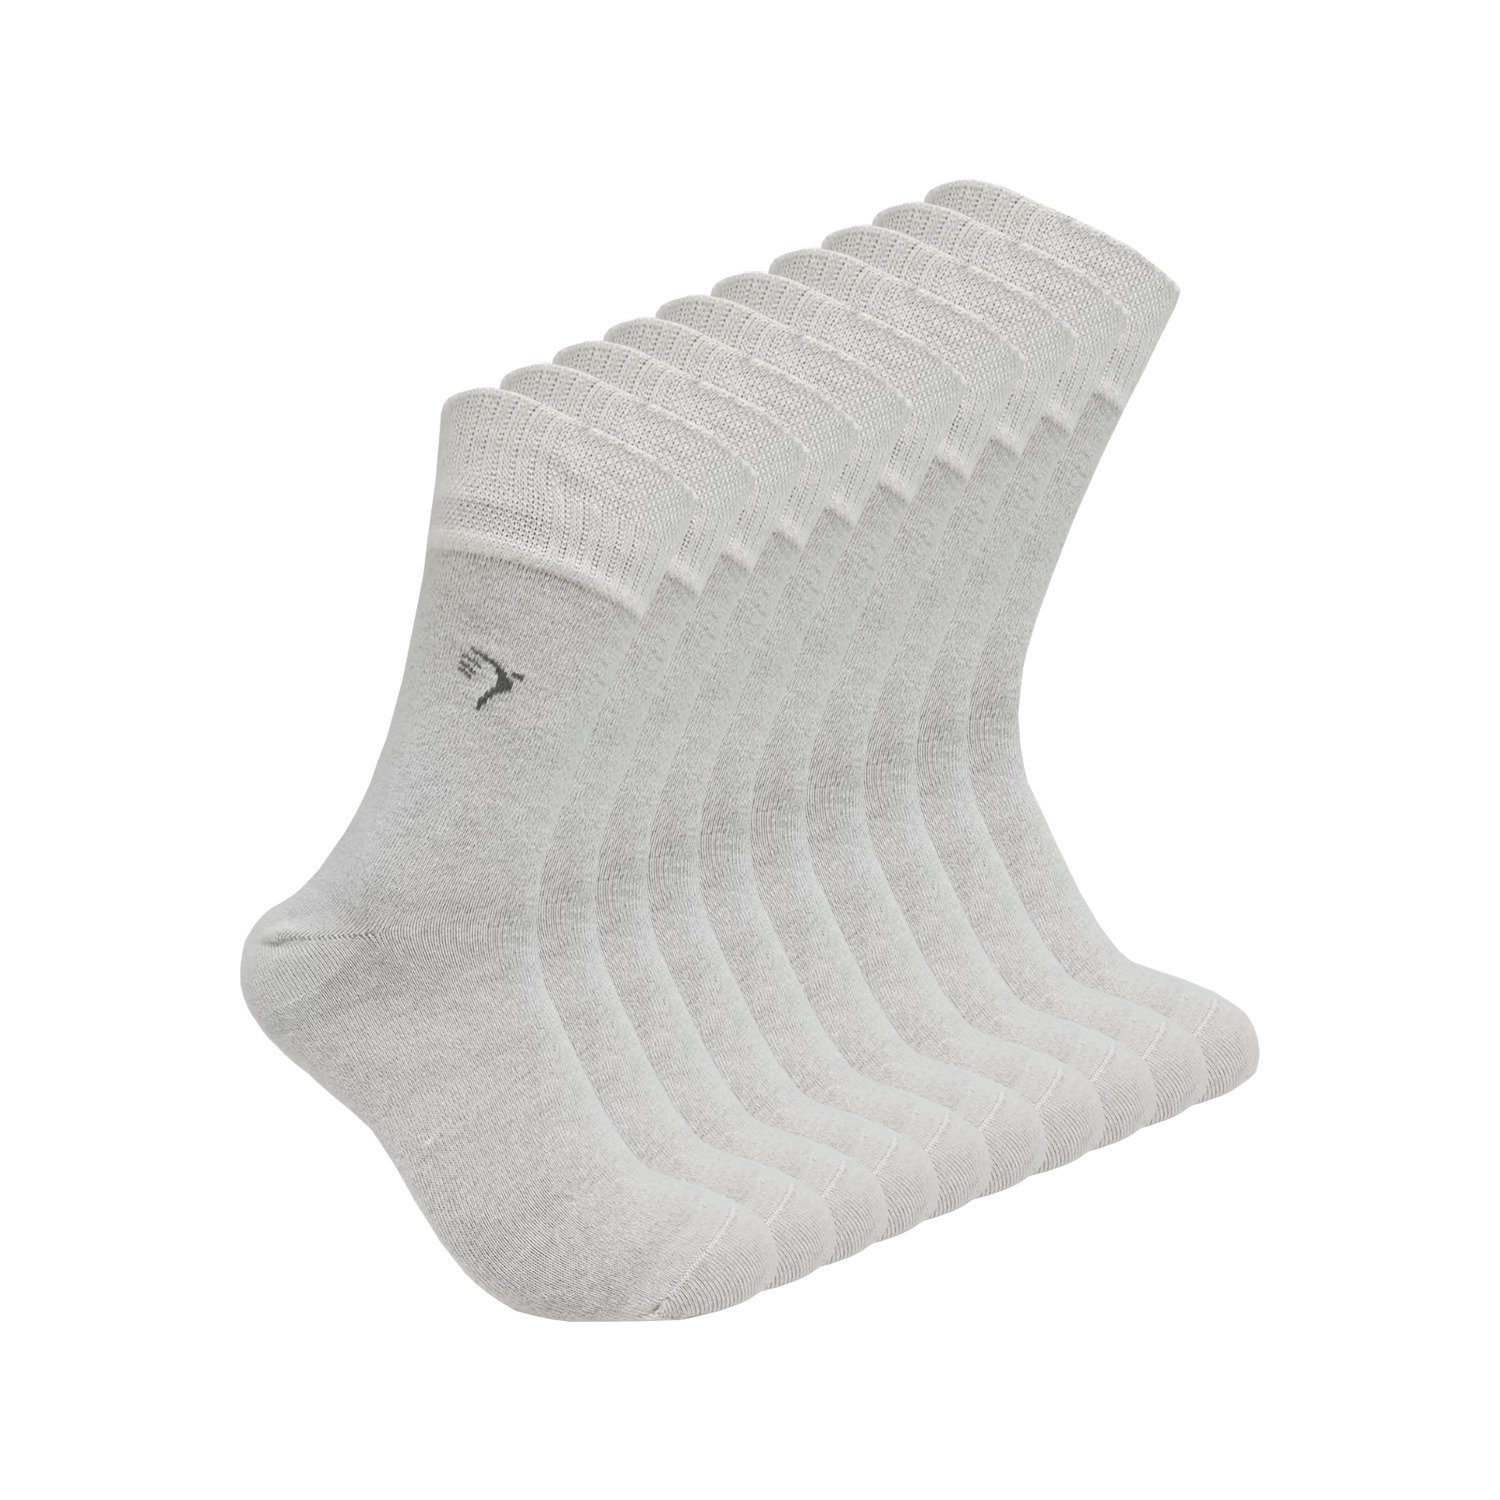 Max Lindner Diabetikersocken, Silbersocken, Antibakterielle Socken mit 10 % Silbergarn (10-Paar) Komfortbund (ohne Gummi) weiß